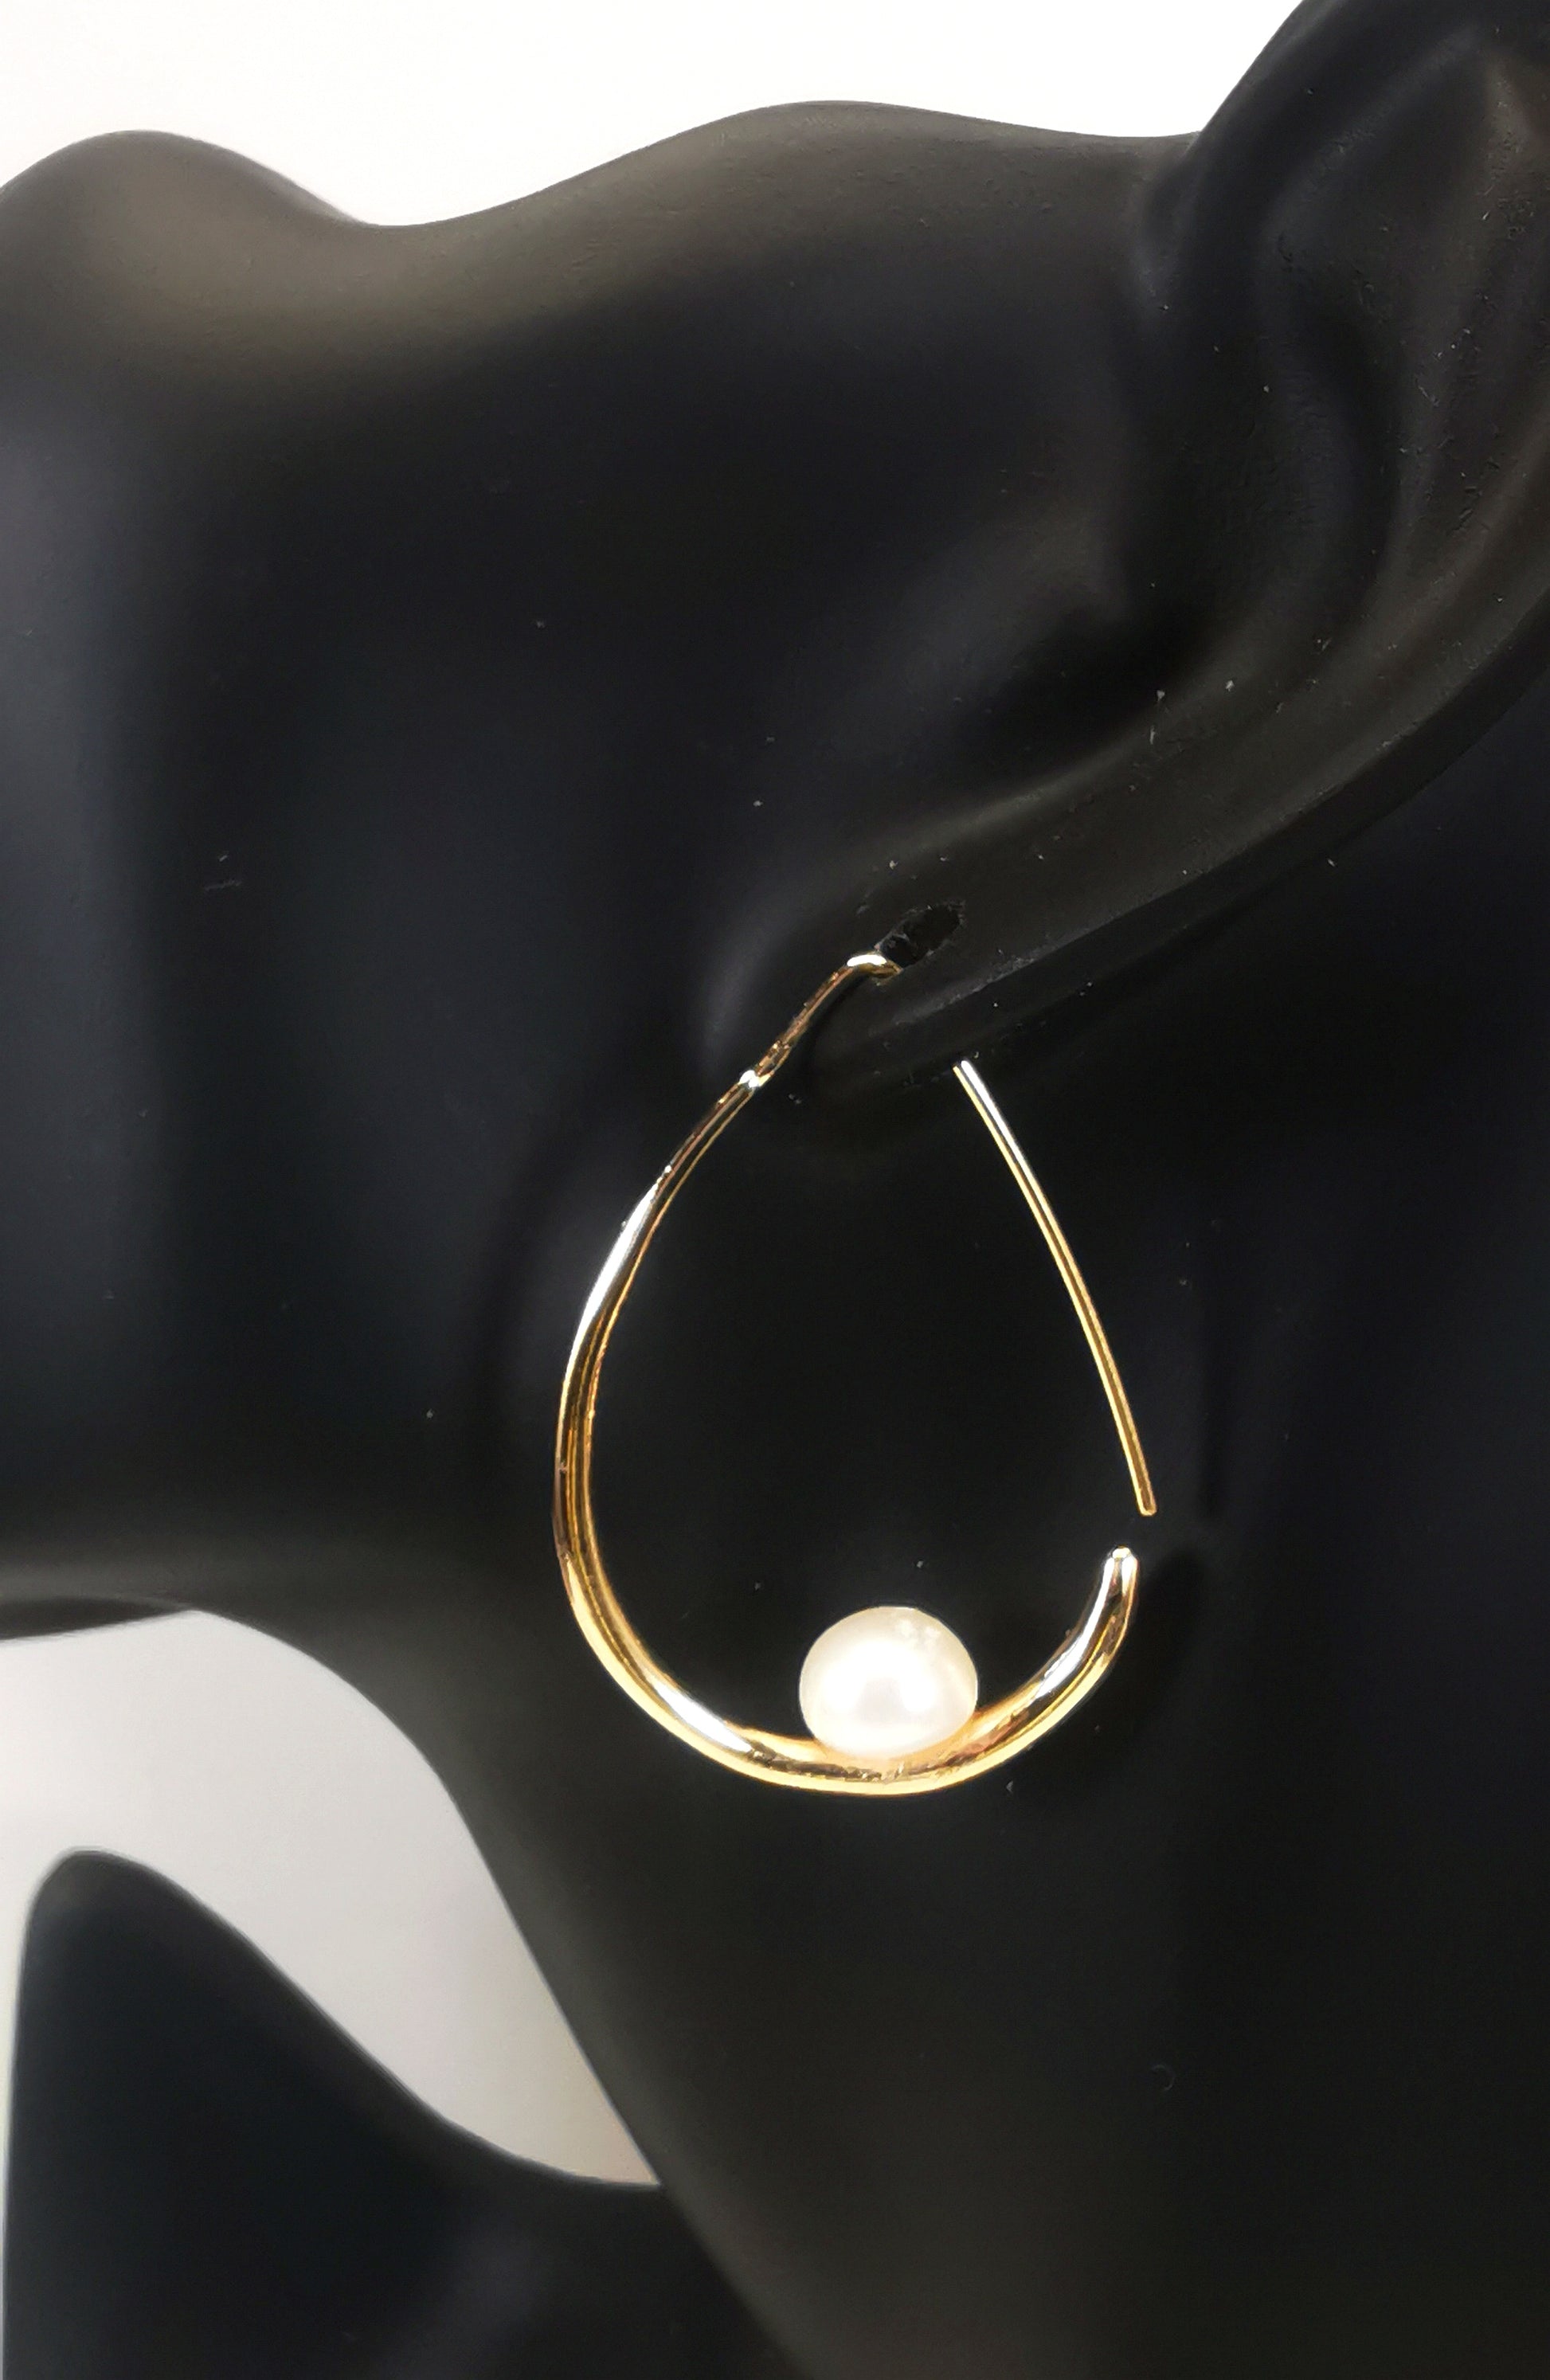 Boucles d'oreilles perles de culture blanches 8mm montées sur un pendant plaqué or. Ces pendant ont la forme d'un contour de poire de 40mm de haut, plus épais en bas avec un brin arrière fin pour pouvoir être enfilé sur l'oreille. Représentées par une boucle suspendue à l'oreille d'un mannequin buste noir. Vue de coté.